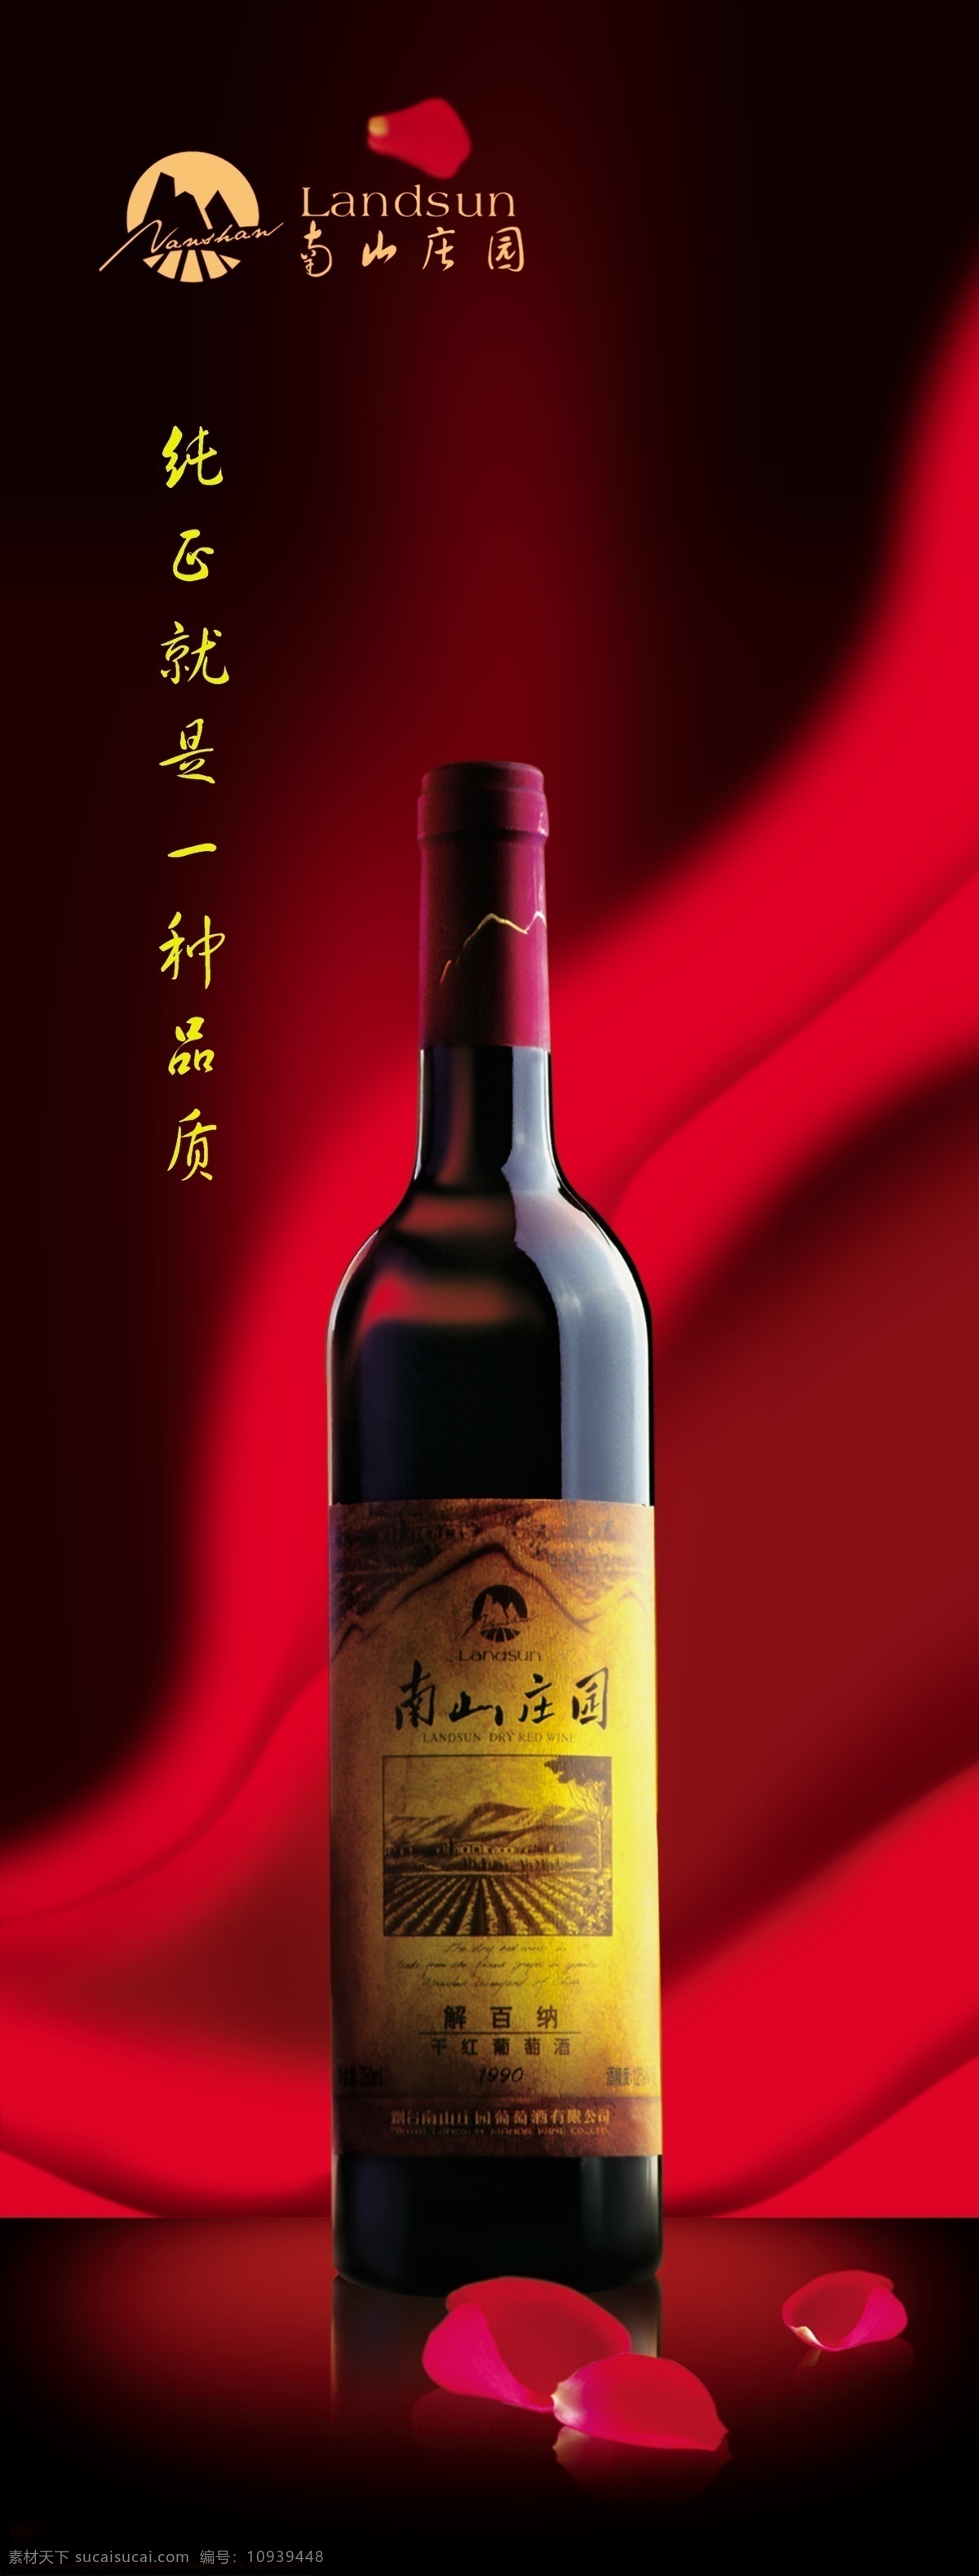 葡萄酒 广告 竖 构图 酒瓶 红绸 黑色